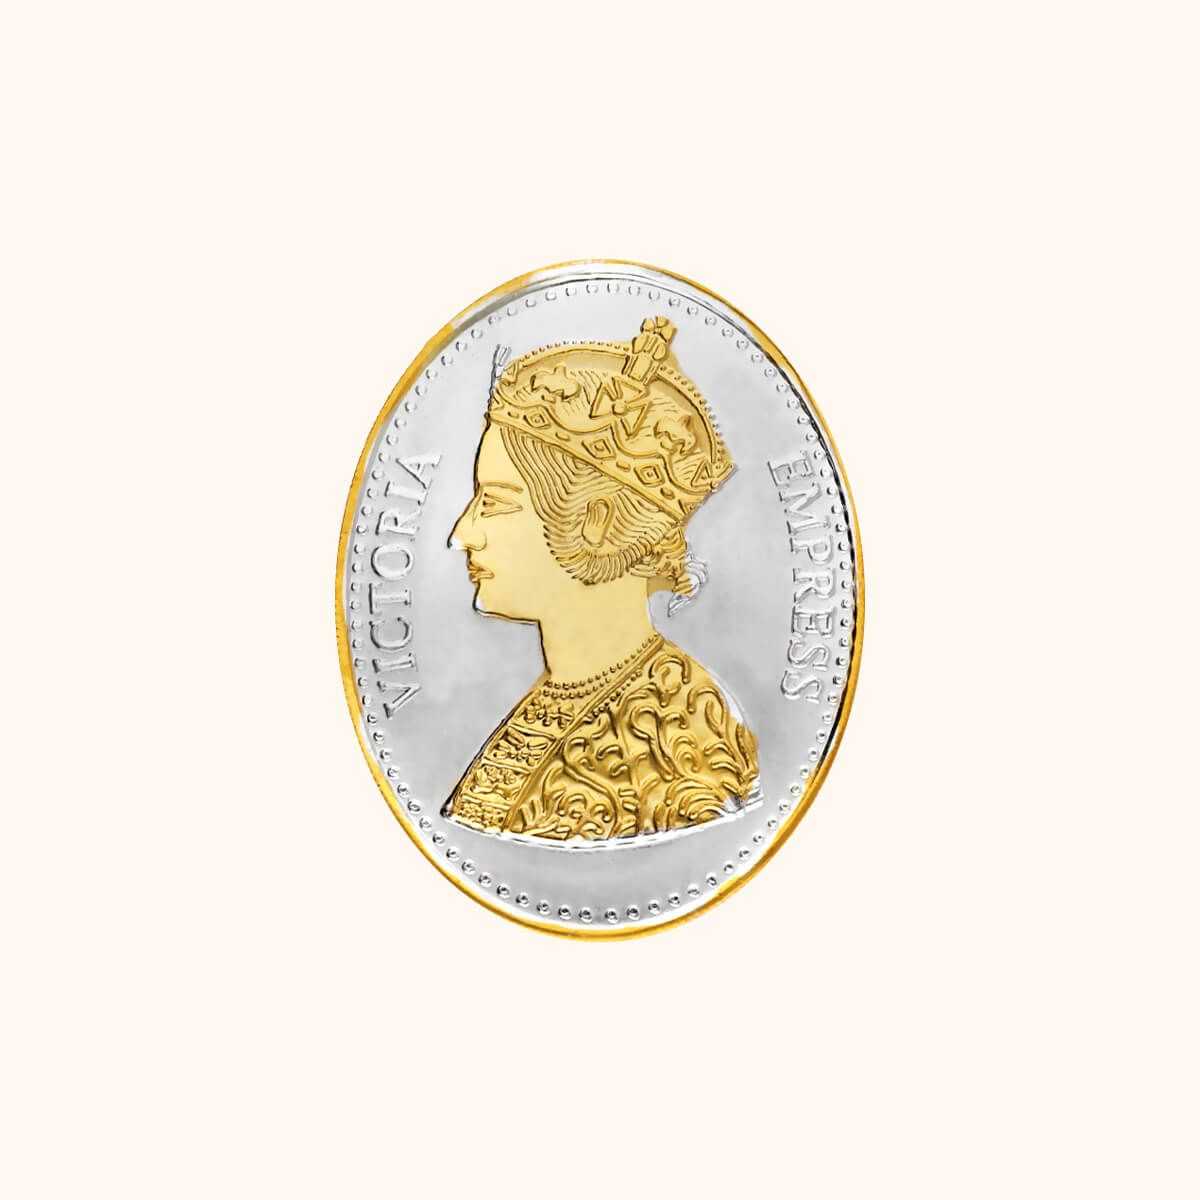 50 Gms Queen Victoria Silver Coin